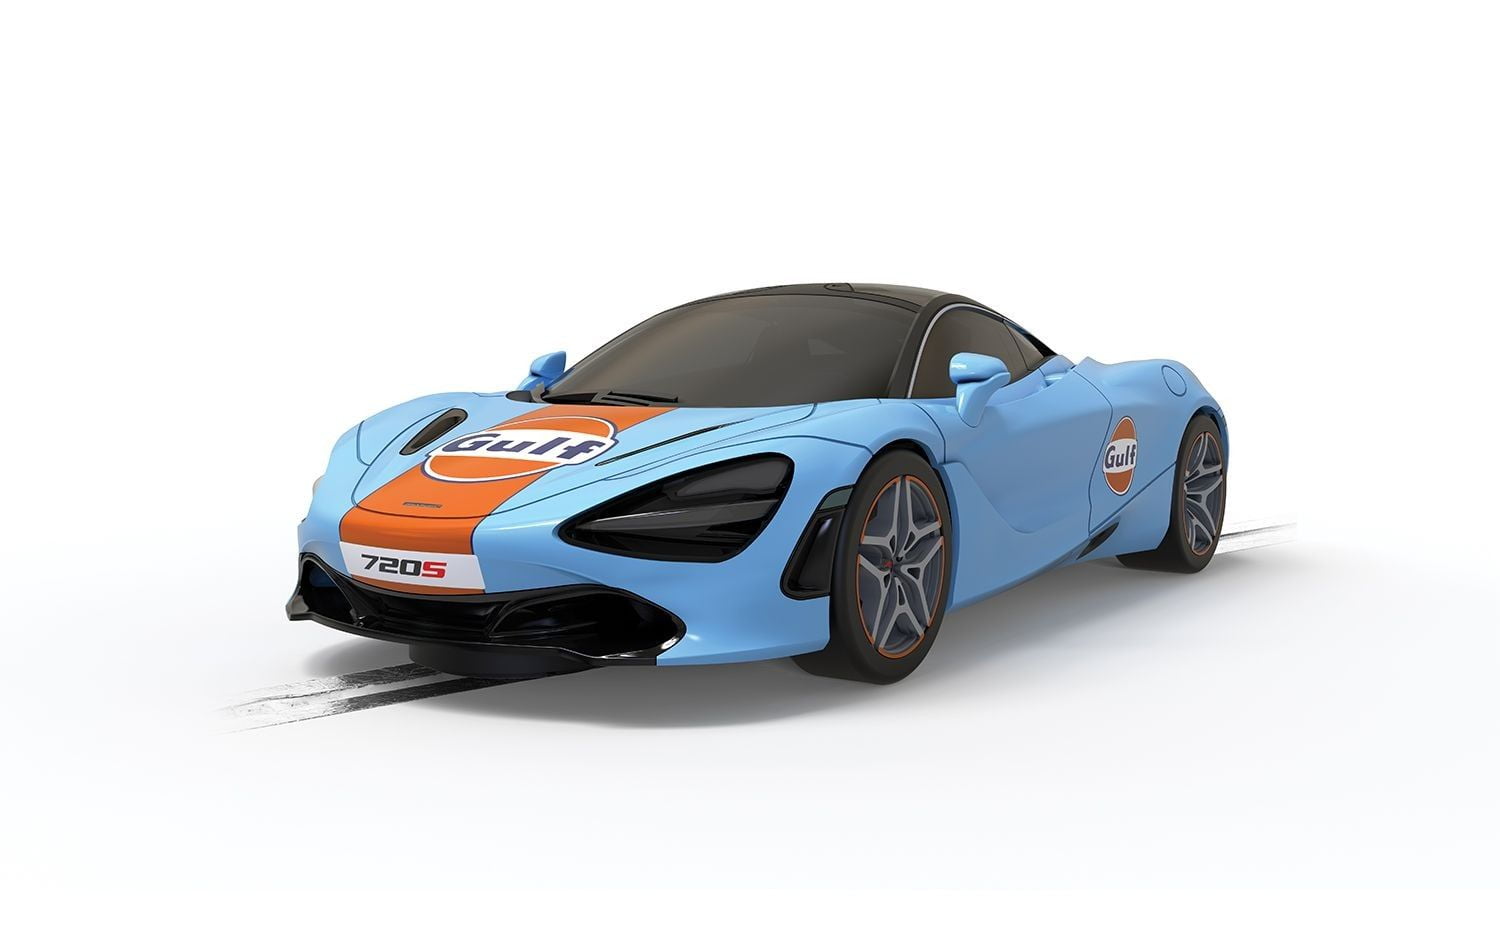 McLaren 720S - Gulf Edition